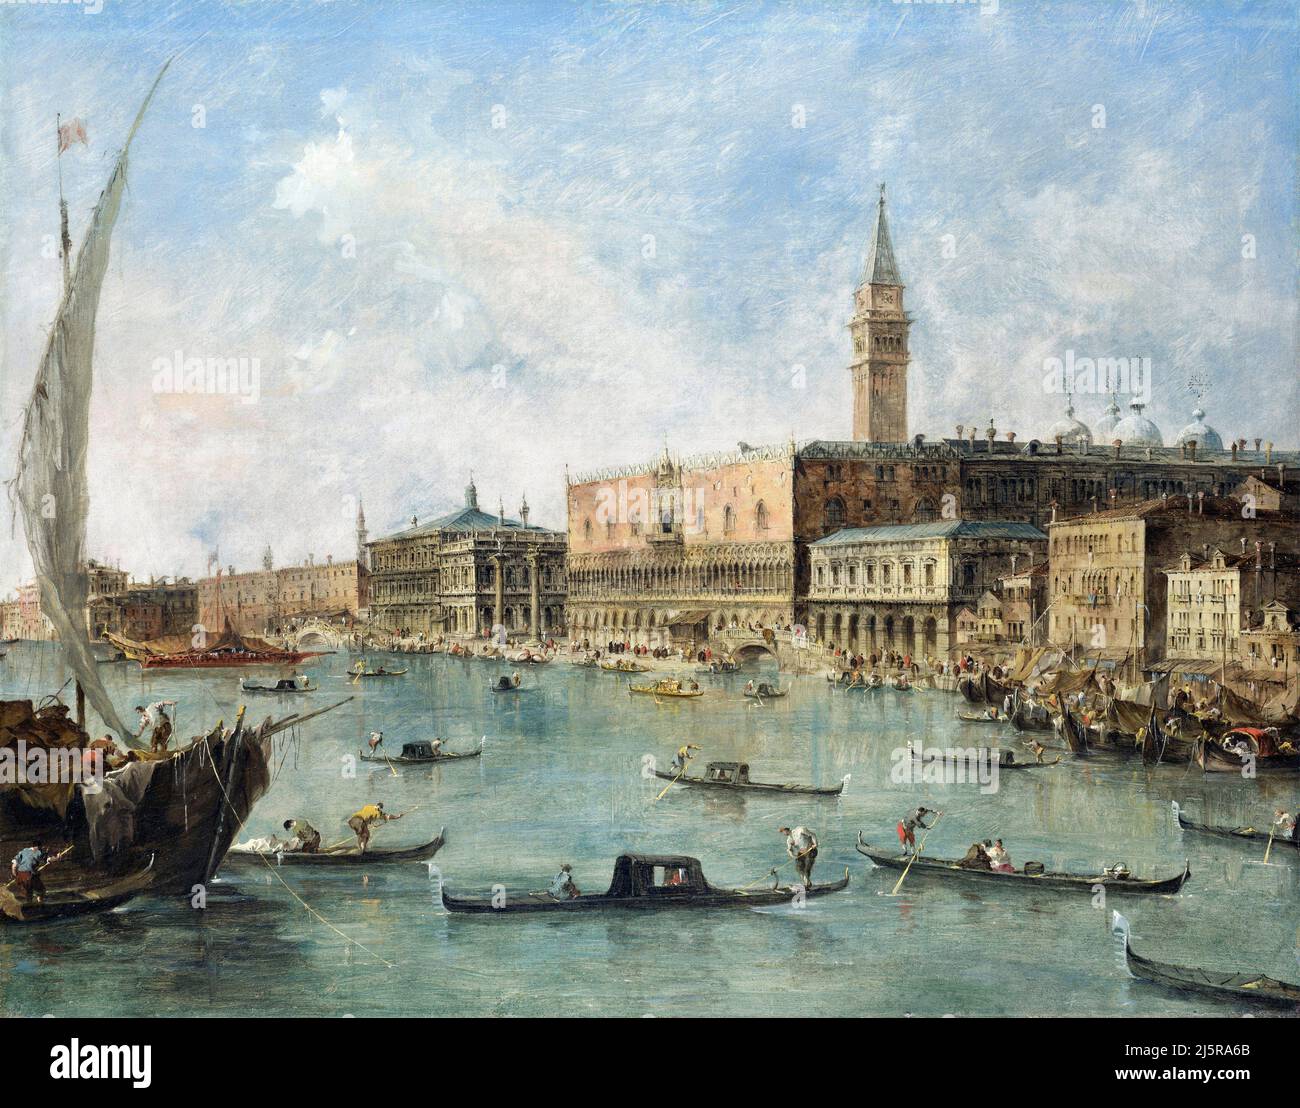 Venise: Le Palais des Doges et le Molo du bassin de San Marco par Francesco Guardi (1712-1793), huile sur toile, c. 1770 Banque D'Images